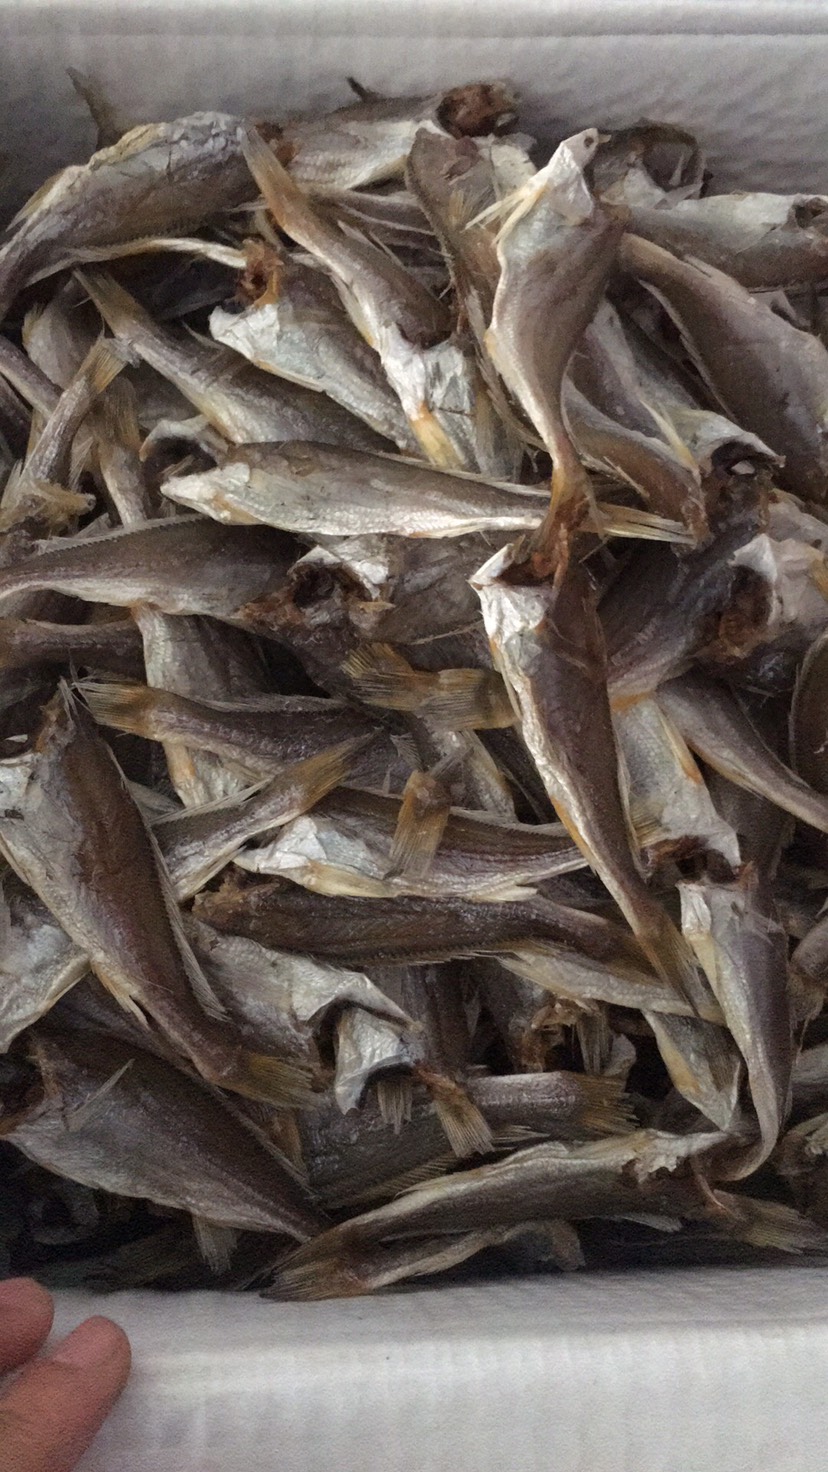 [鱼干批发]小鱼干 海产品,鱼干销售价格20元/斤 